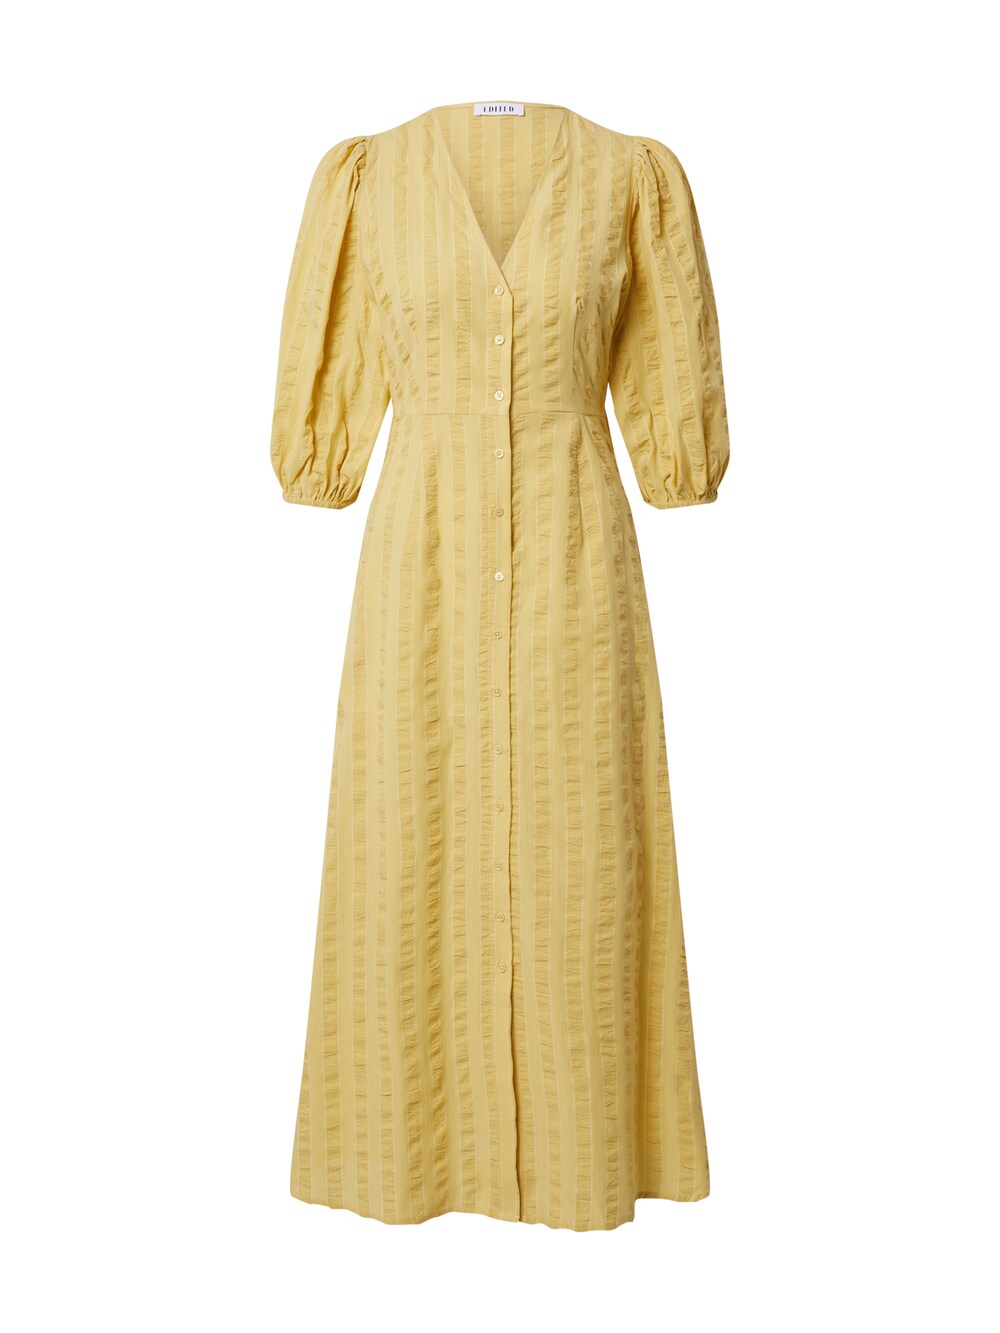 Рубашка-платье Edited Elena, желтый рубашка платье edited nathaly синий желтый